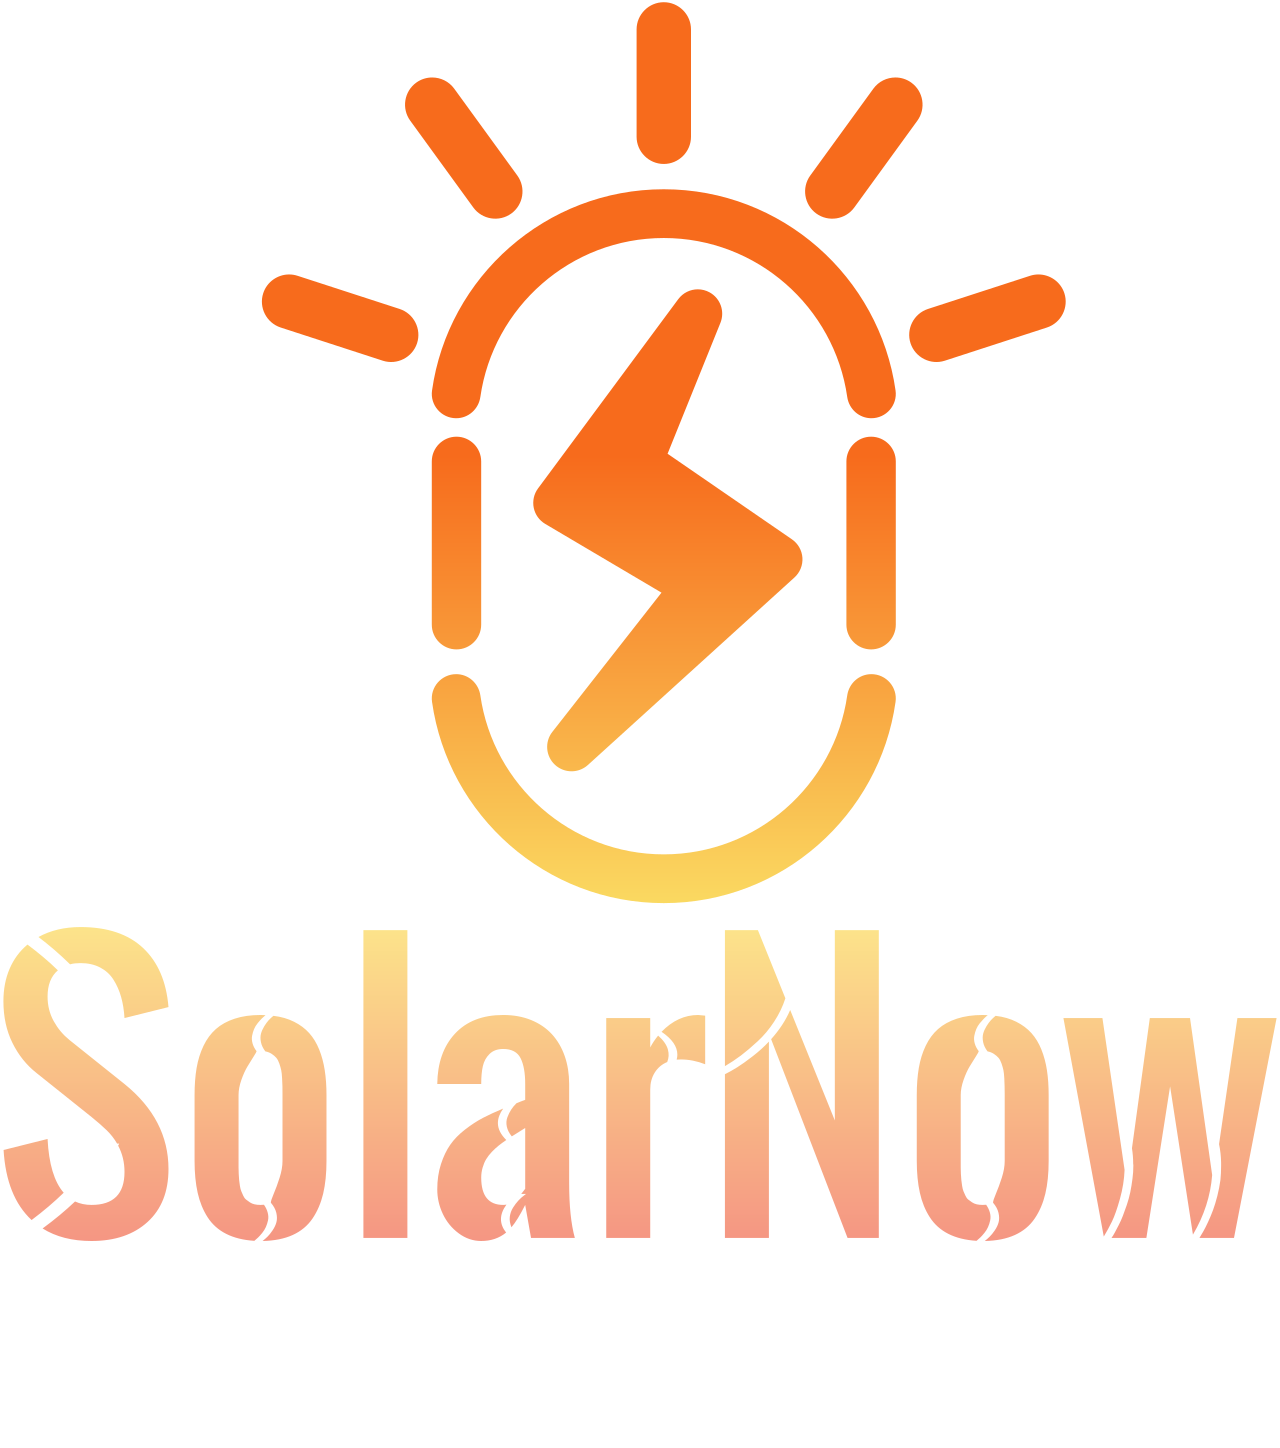 SolarNow 's web page